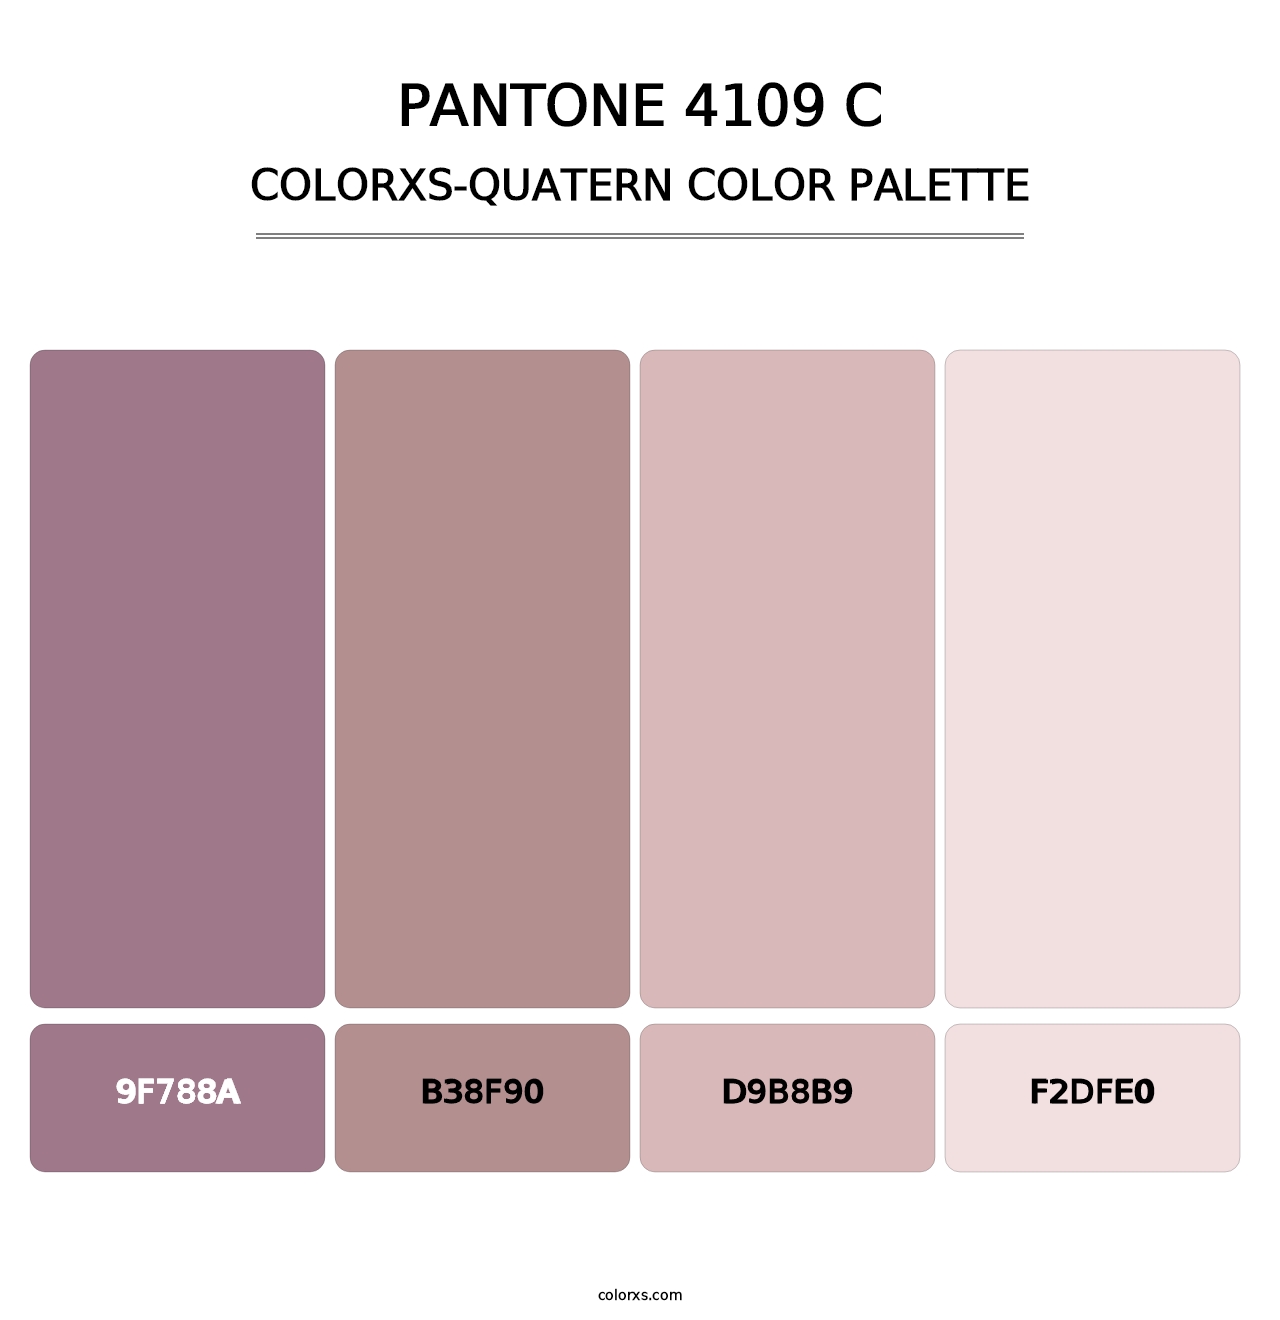 PANTONE 4109 C - Colorxs Quatern Palette